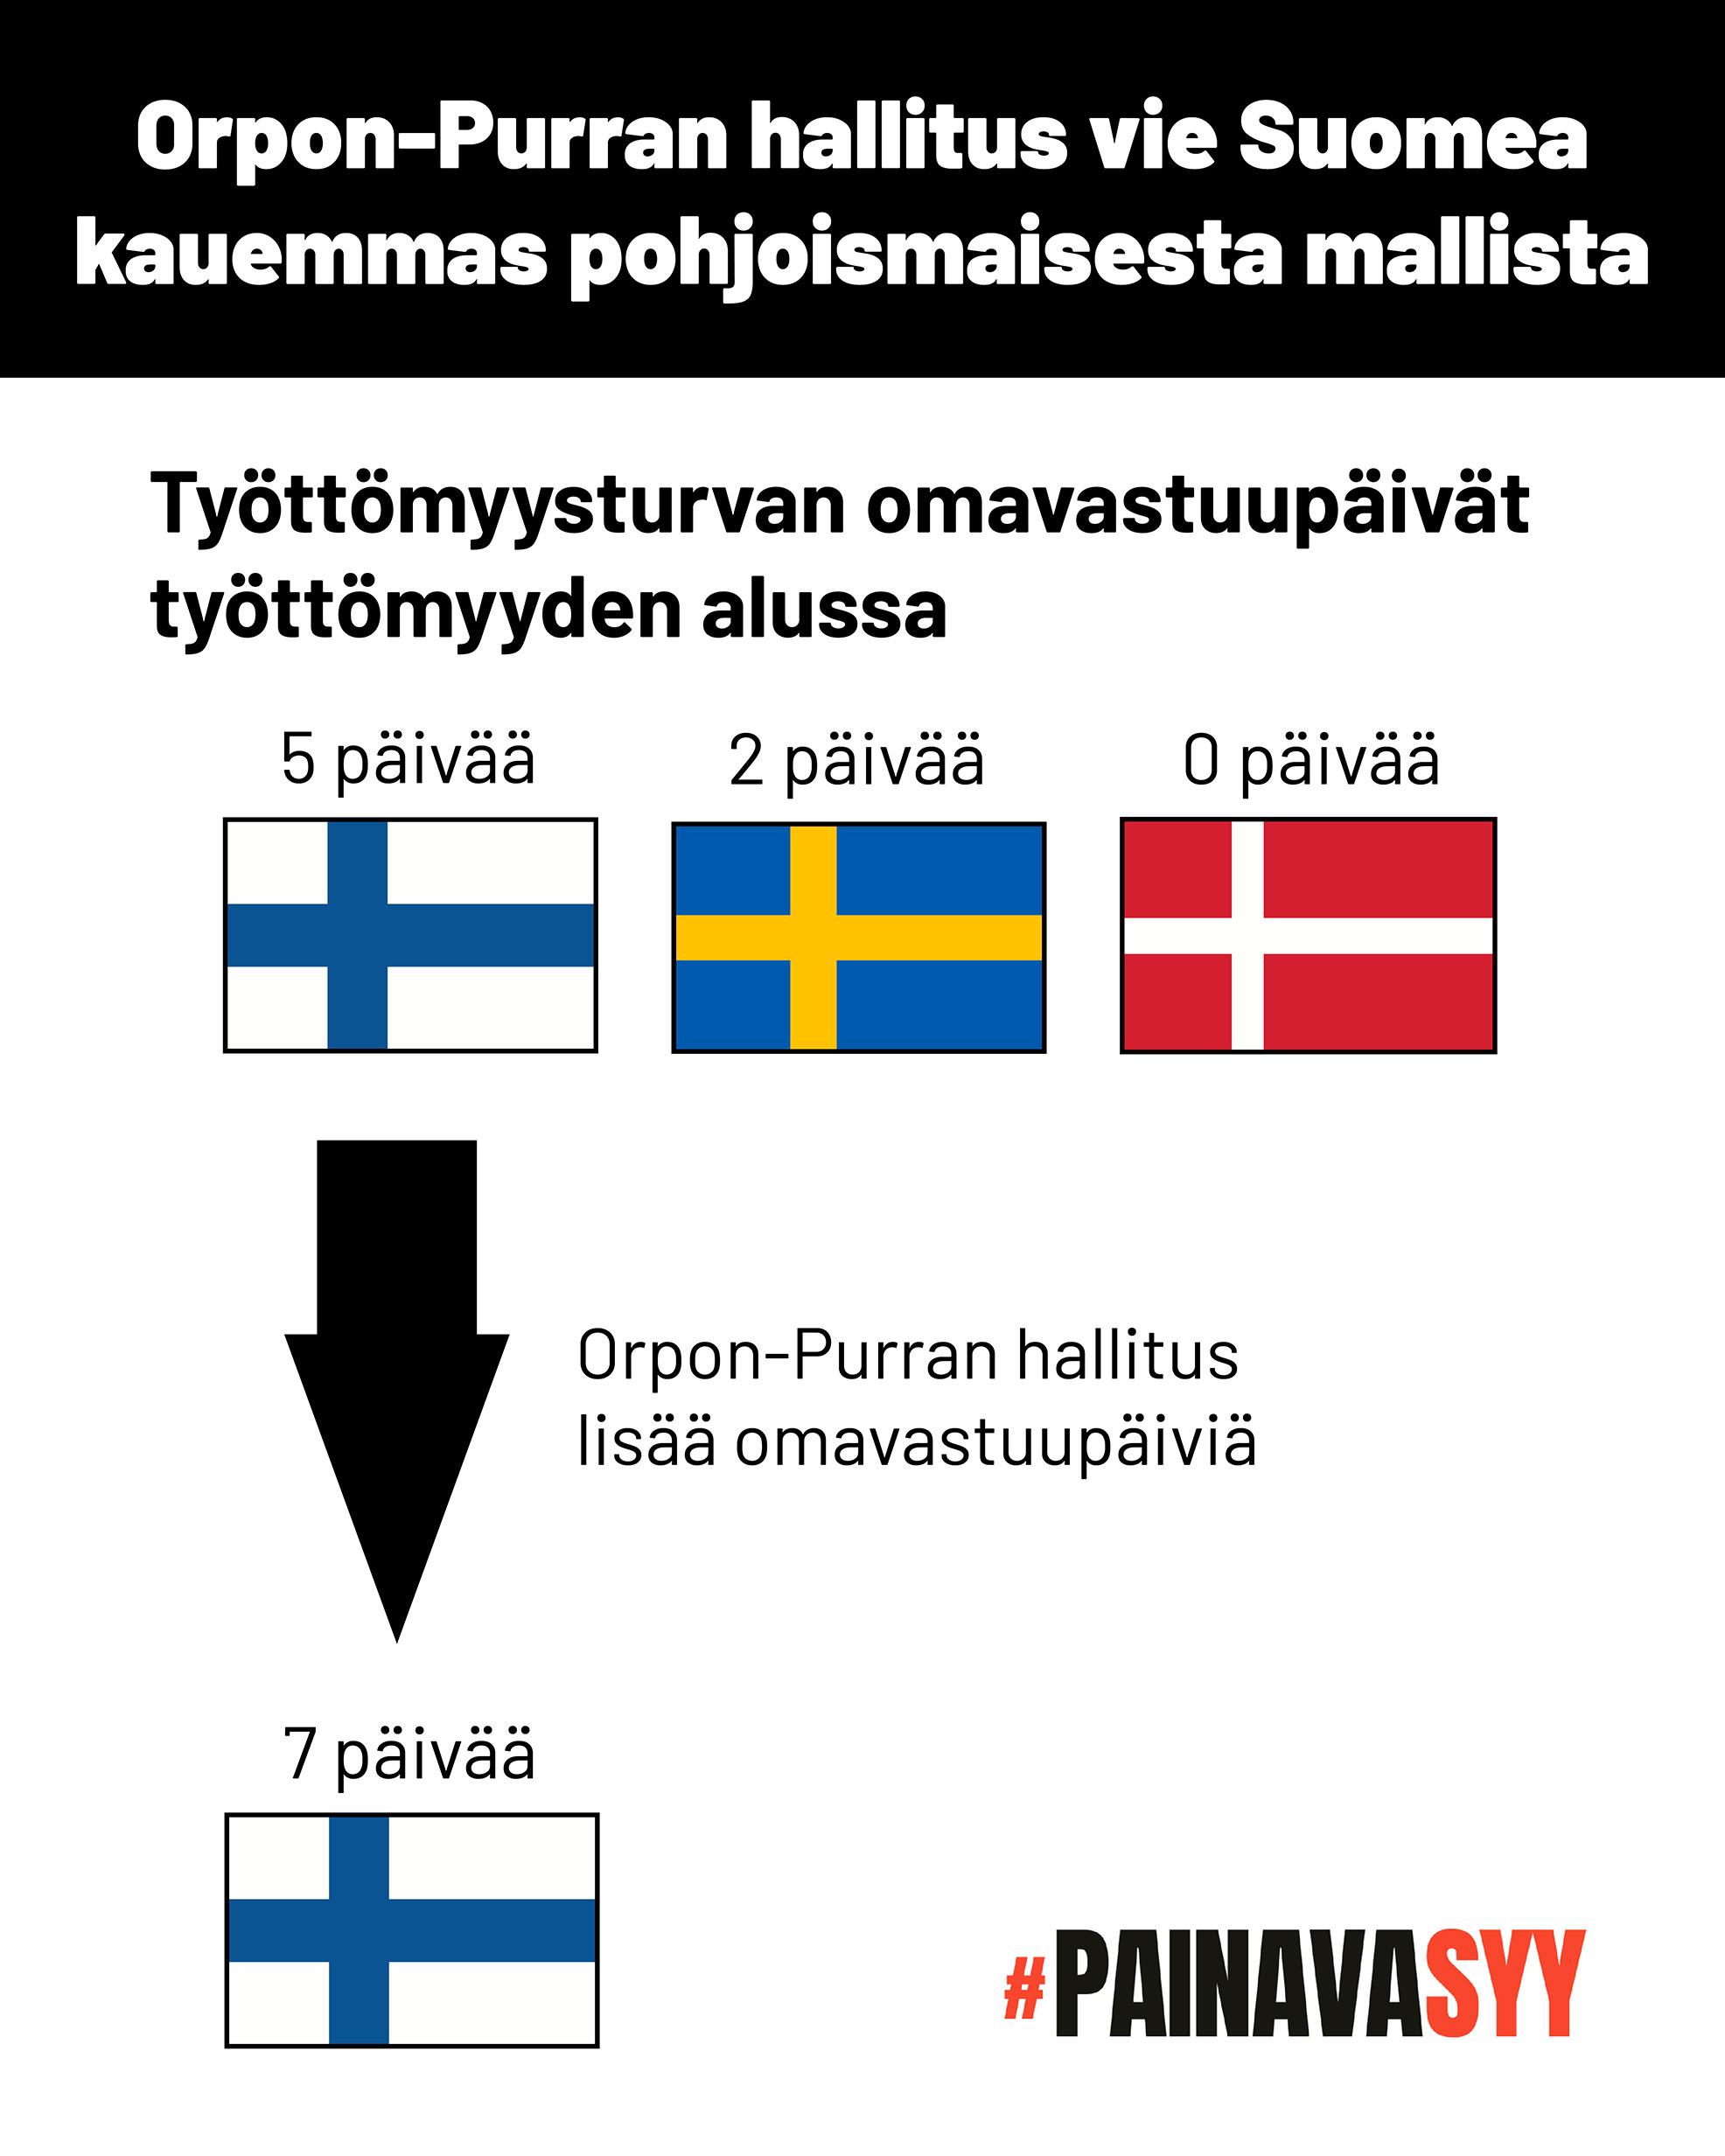 Kaavio osoittaa, että Orpon-Purran hallituksen esitykset nostavat työttömyysturvan omavastuupäivät työttömyyden alussa Suomessa viidestä seitsemään päivään. Ruotsissa omavastuupäiviä on kaksi, Tanskassa nolla.